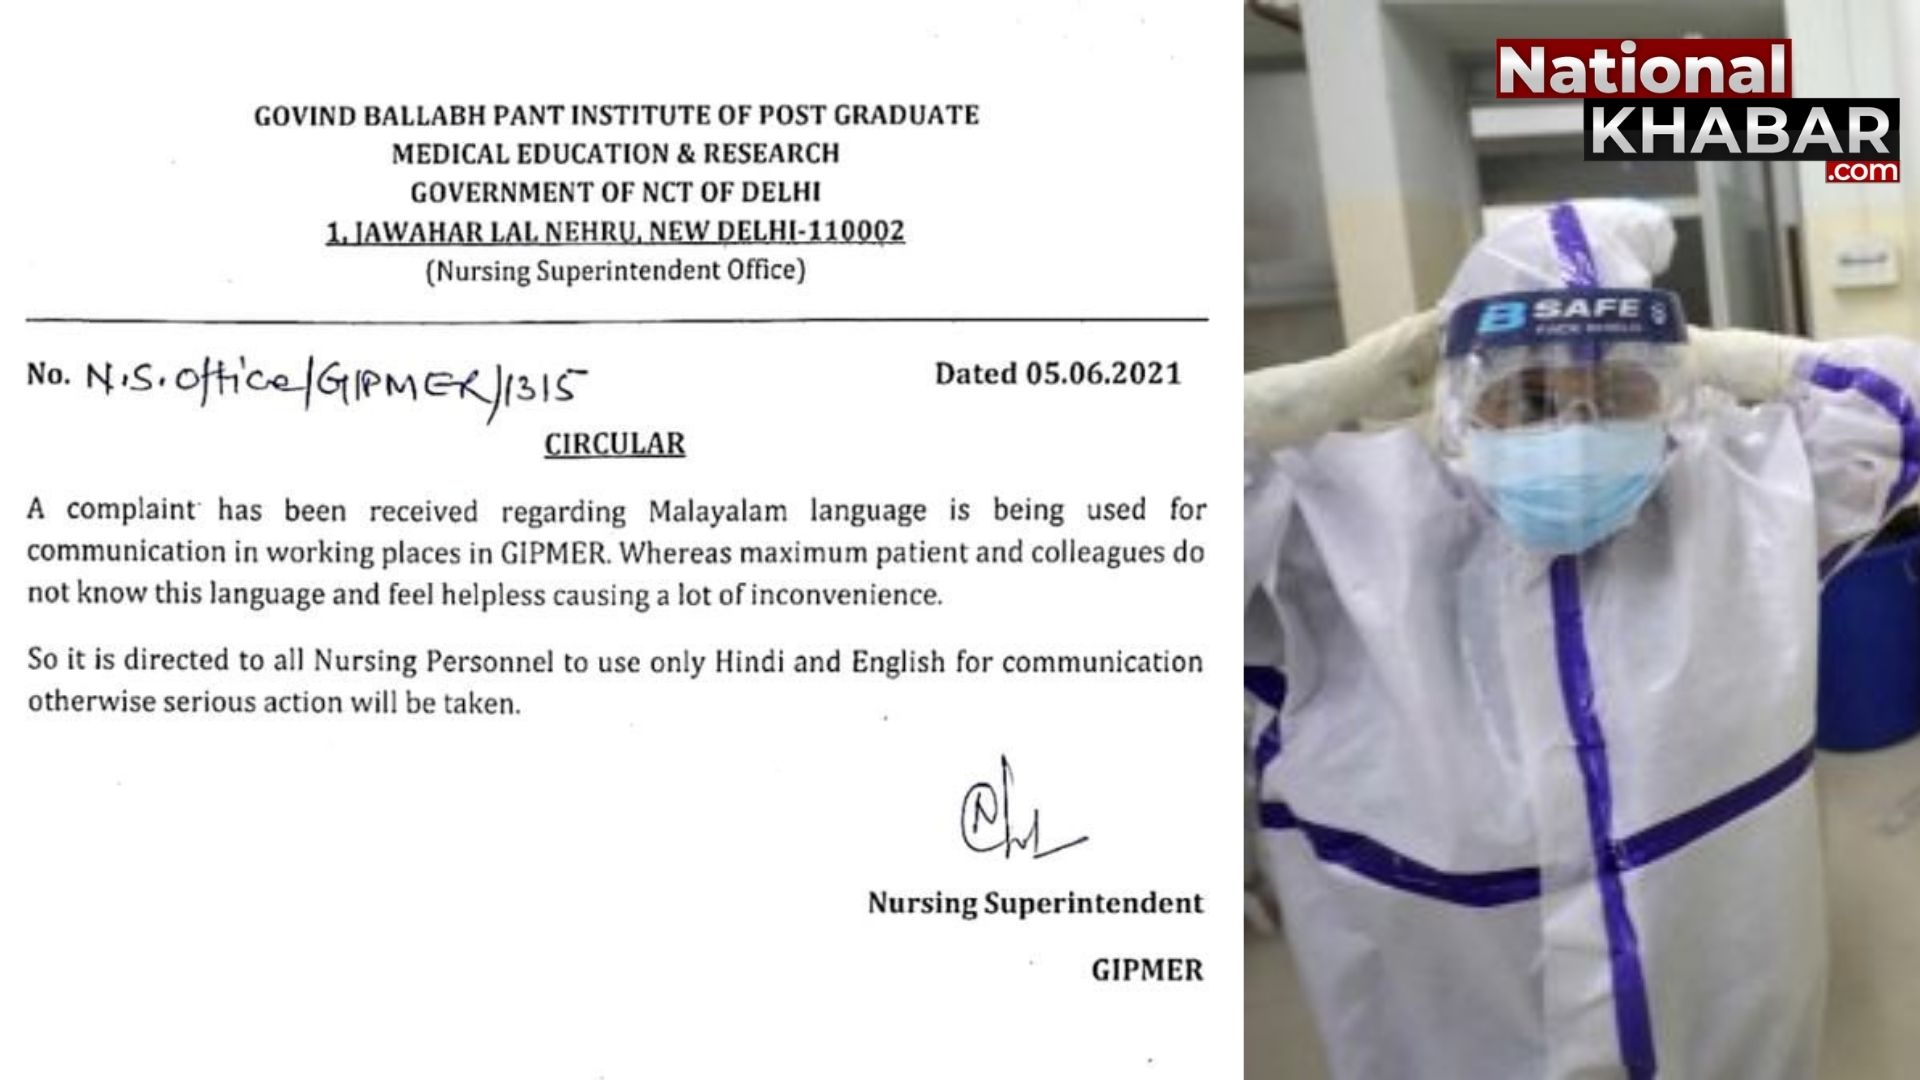 दिल्ली के सरकारी अस्पताल ने लगाई ड्यूटी के दौरान मलयालम भाषा के इस्तेमाल पर रोक, जानें क्या है वजह